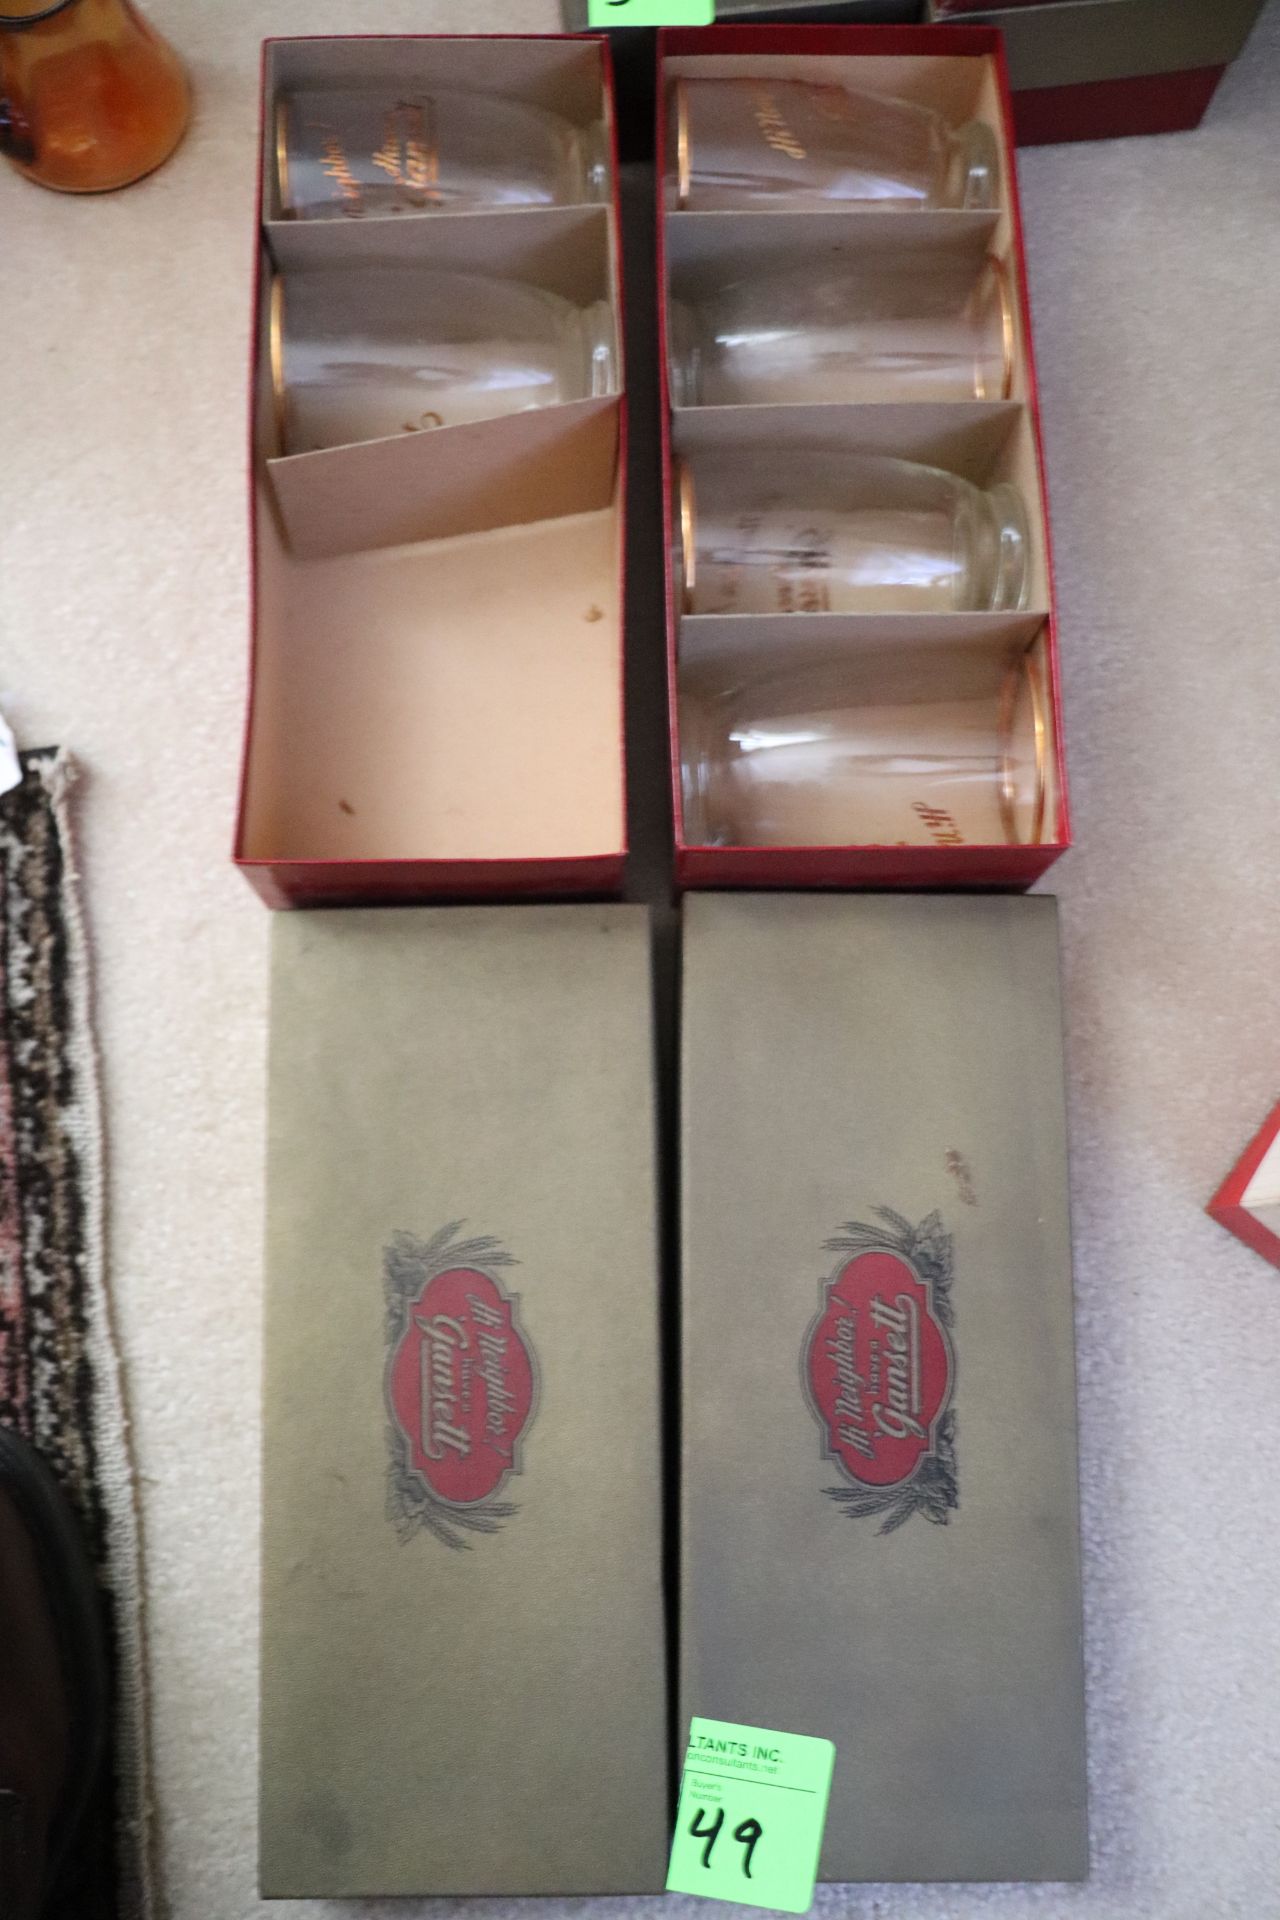 Set of Gansett glasses, one box incomplete